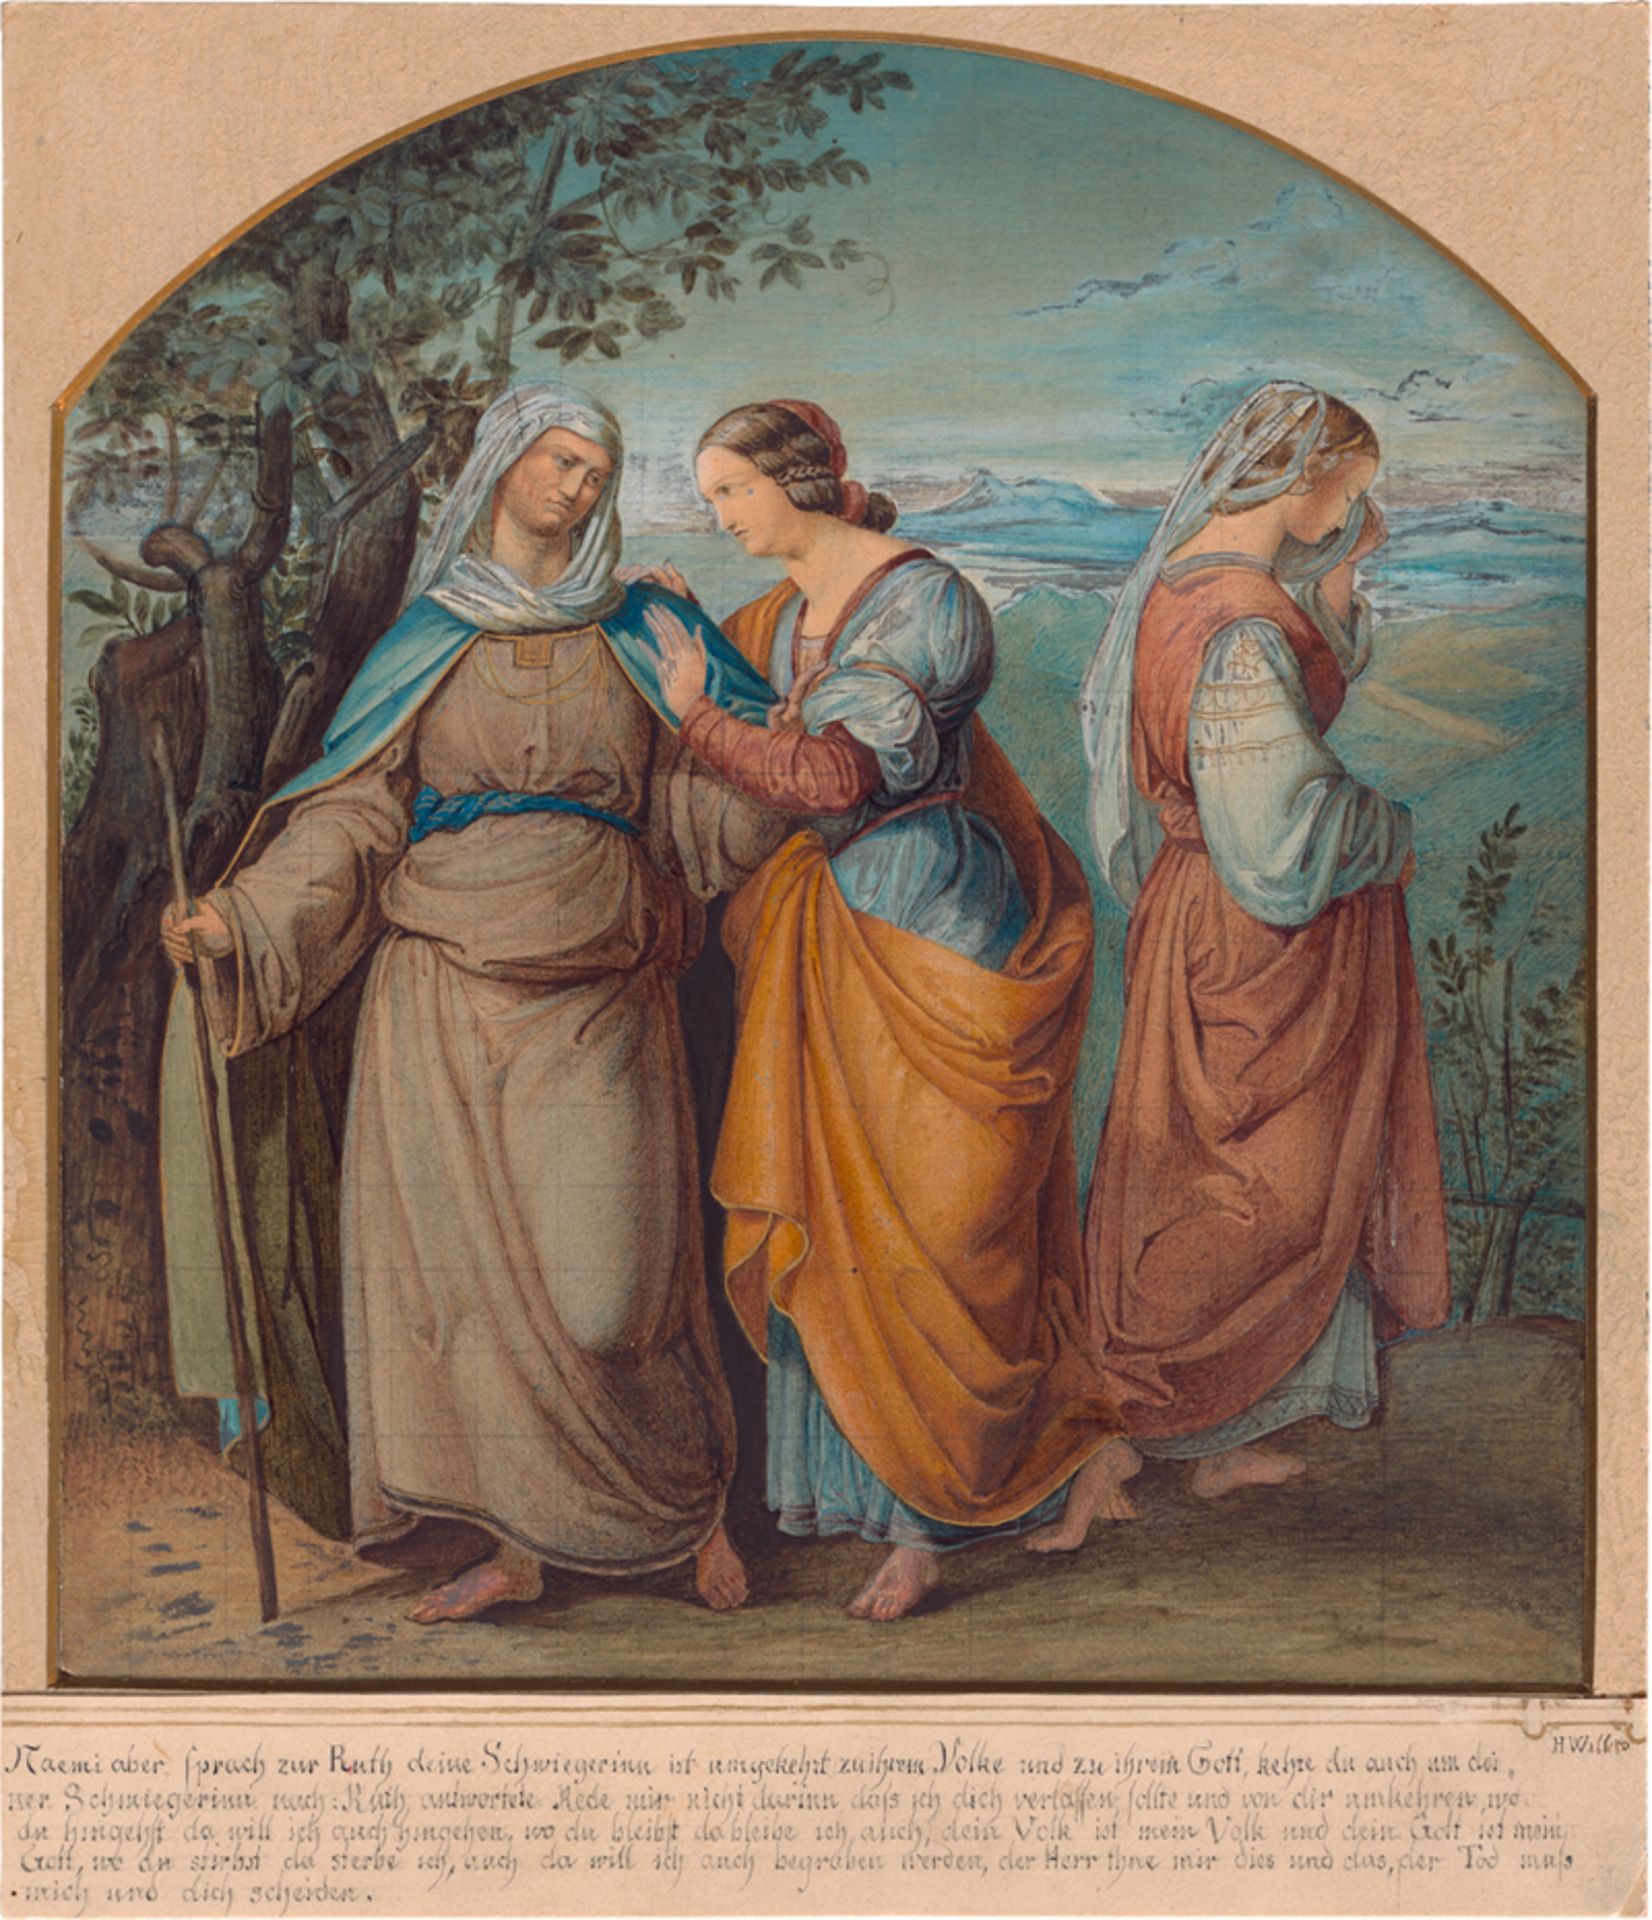 Willers, Heinrich: Ruth und Naemi in der Wüste